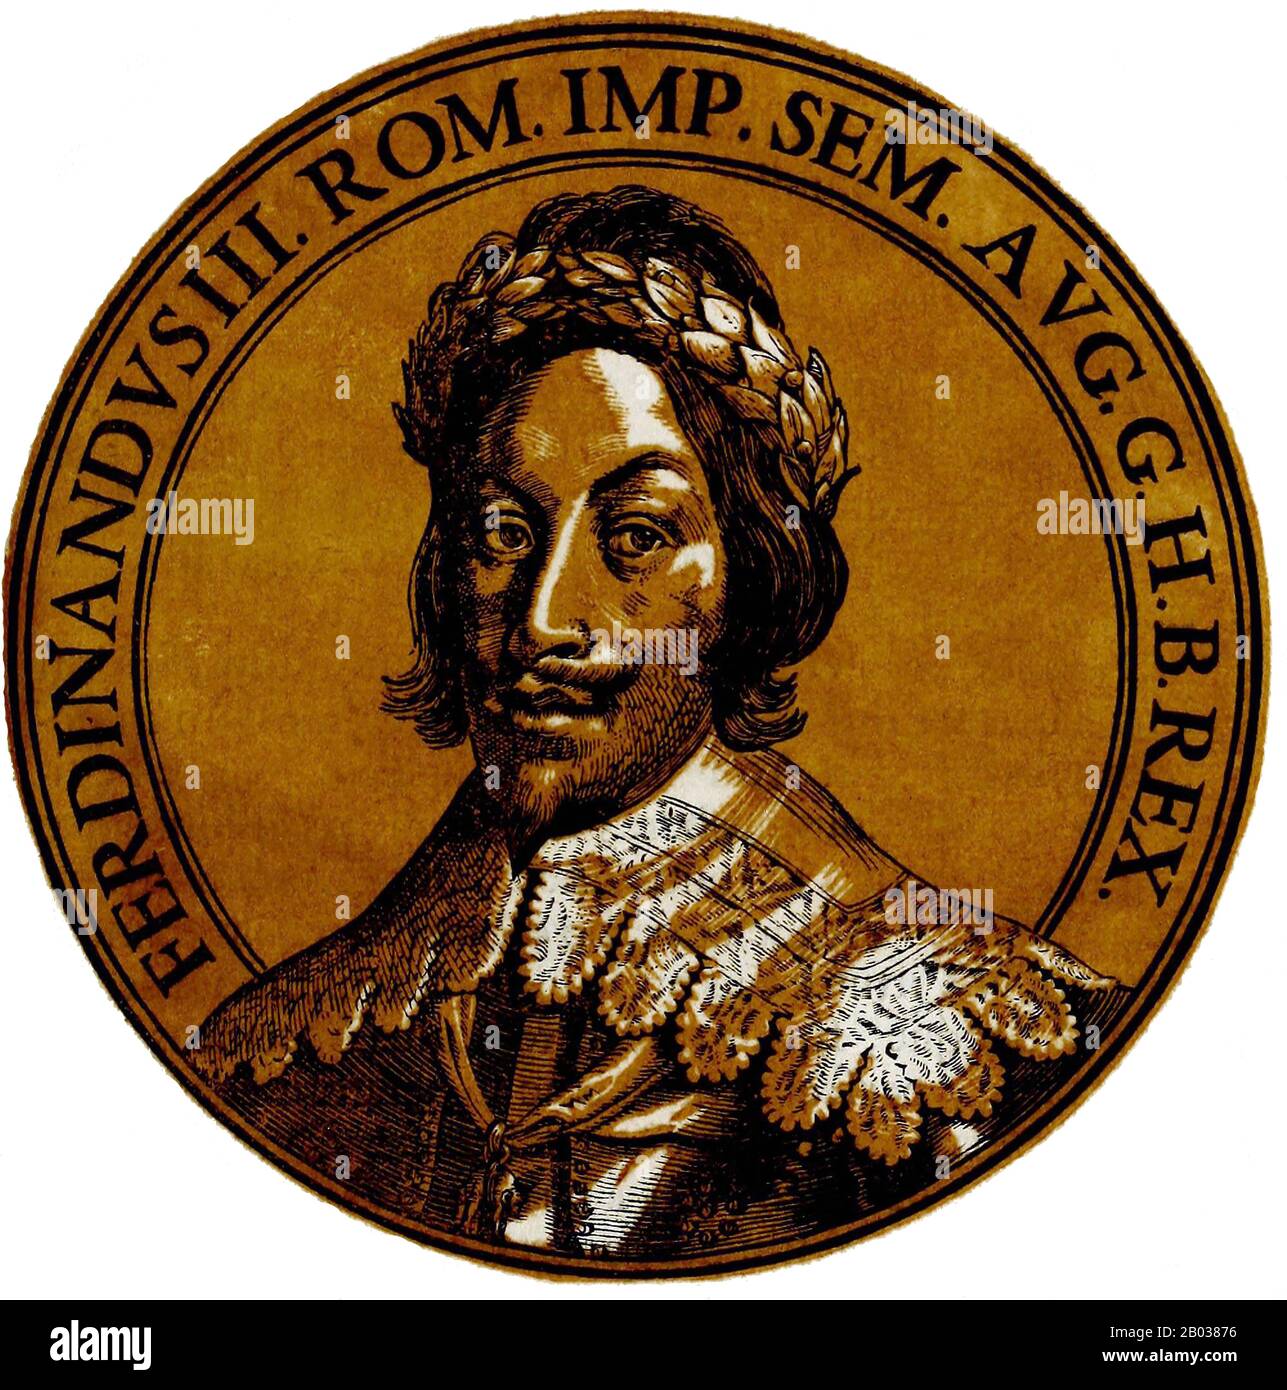 Ferdinando III (1608-1657) era il figlio maggiore dell'imperatore Ferdinando II Divenne Arciduca d'Austria nel 1621, re d'Ungheria nel 1625 e re di Boemia nel 1627. Ferdinando fu nominato capo dell'esercito imperiale nel 1634 durante La Guerra Dei Trent'Anni, ed era vitale nella negoziazione della Pace di Praga nel 1635, lo stesso anno fu eletto Re di Germania. Quando suo padre morì nel 1637, gli succedette come Sacro Romano Imperatore. Come imperatore, Ferdinando desiderava la pace con la Francia e la Svezia, ma la guerra si trascinerebbe per altri 11 anni, terminando infine con la firma della pace della Westfali Foto Stock